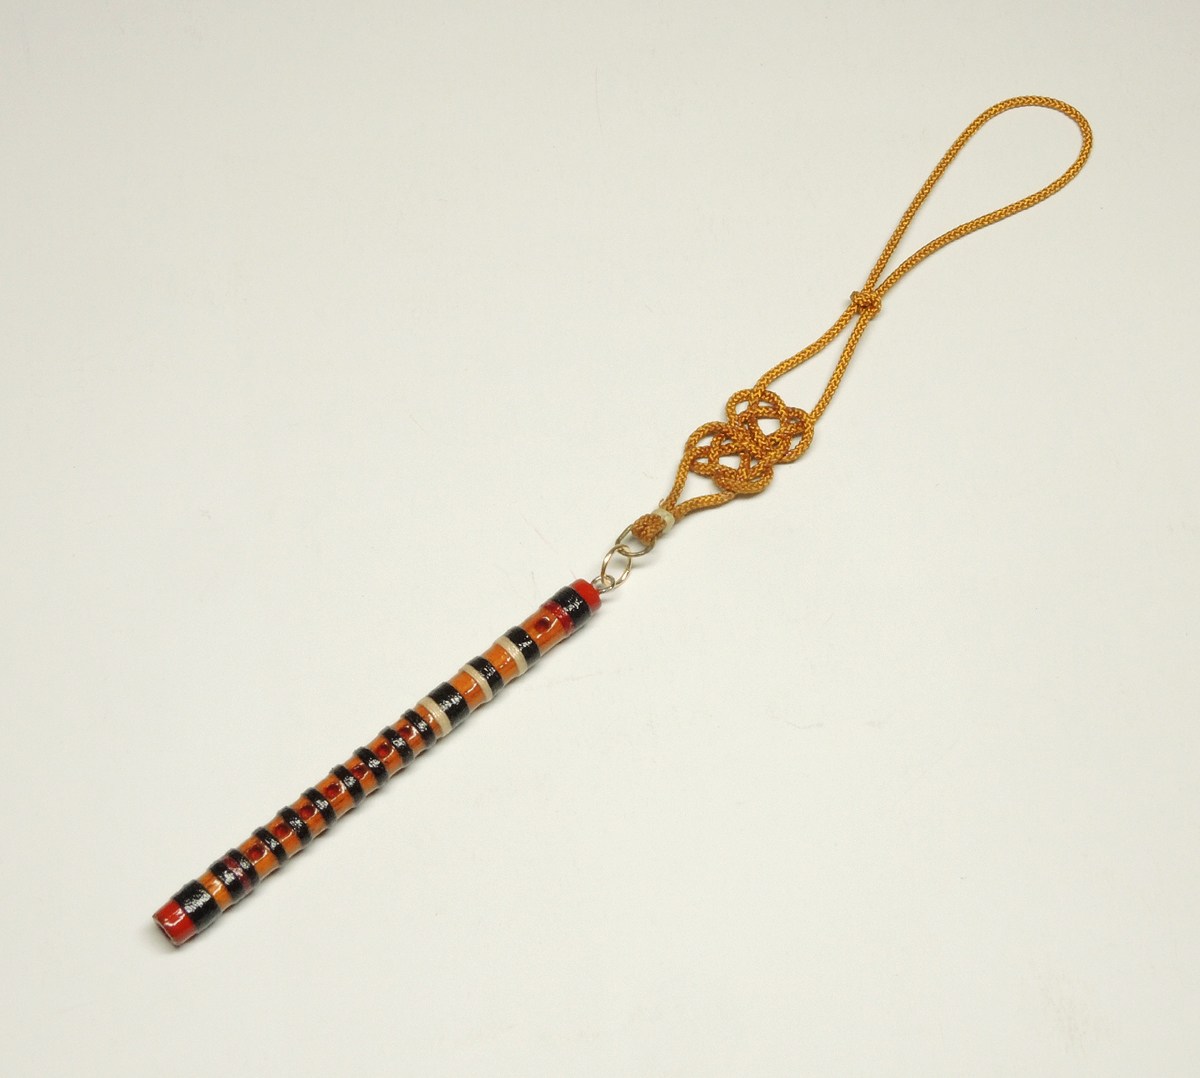 ミニチュア笛 横笛 篠笛 ミニ笛3.3cm 二本組 飾り紐 木製手作り